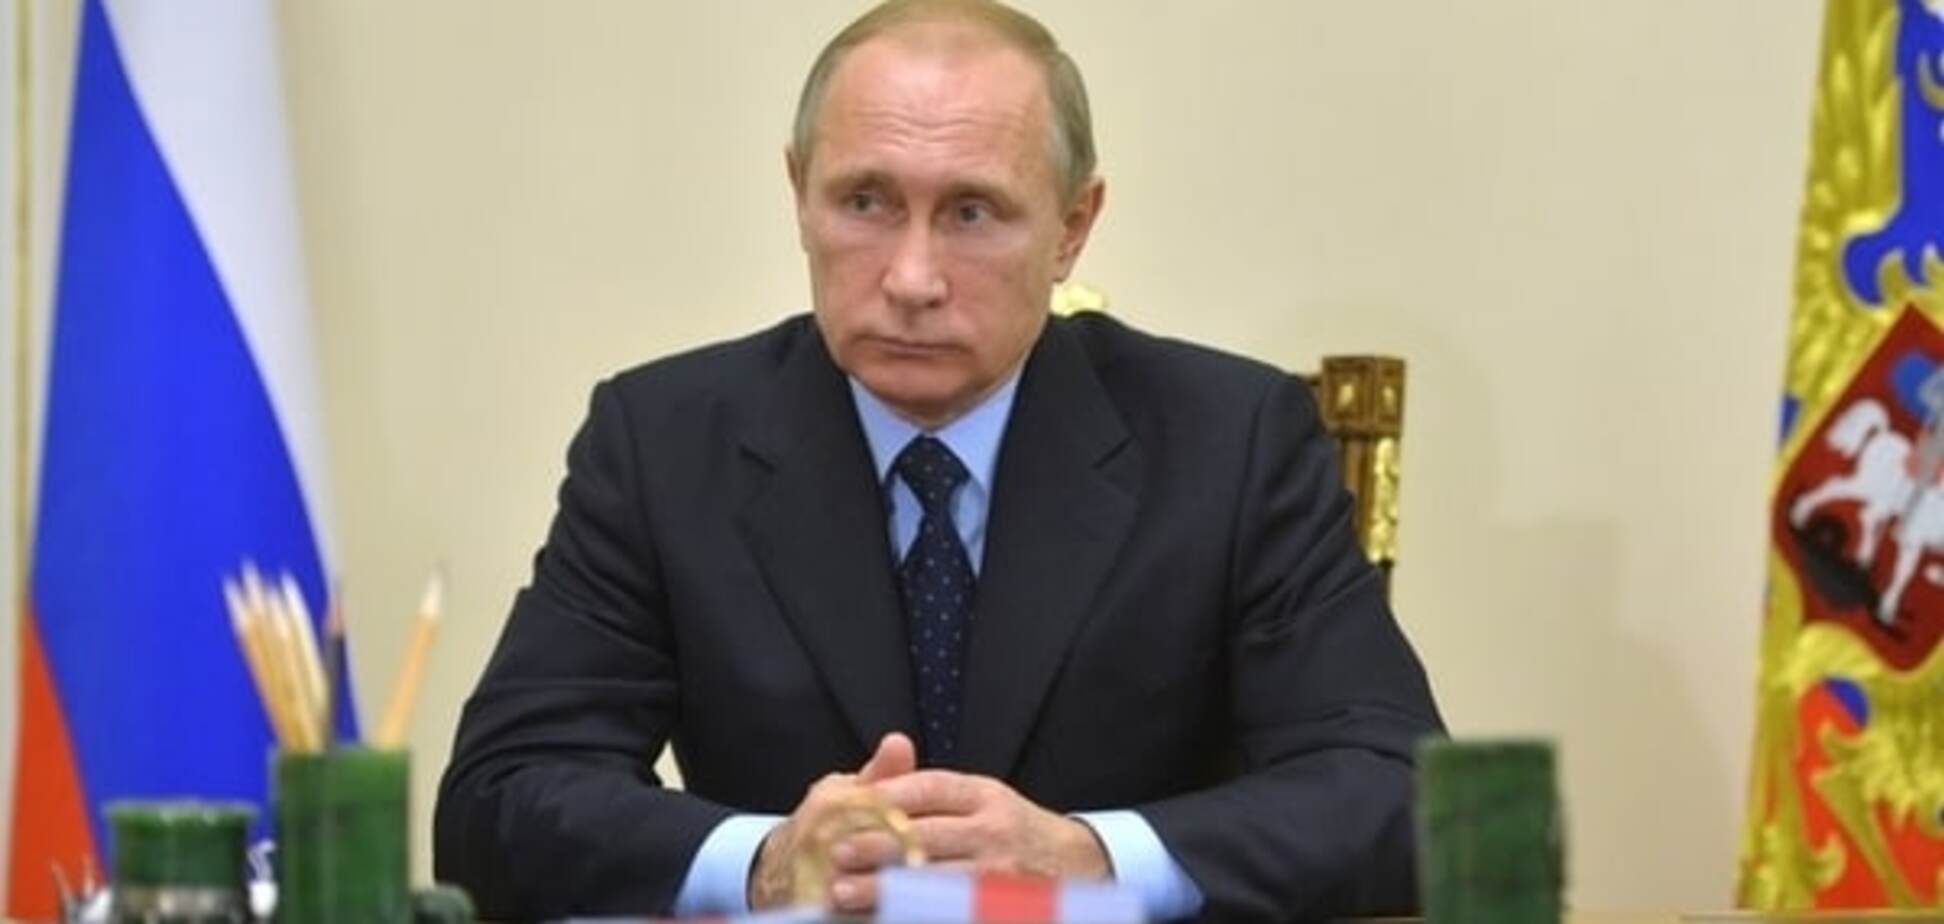 Путин готовится к новой войне - эксперт